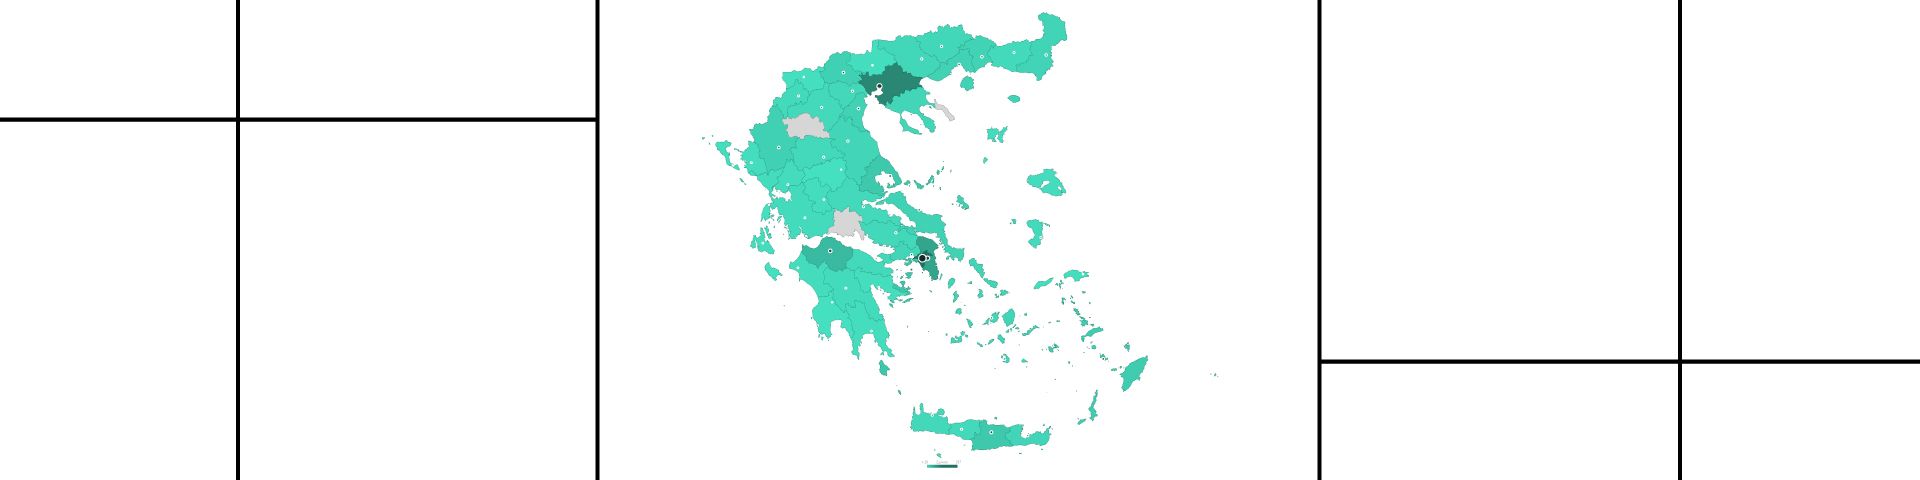 εικόνα με τον χάρτη της Ελλάδας